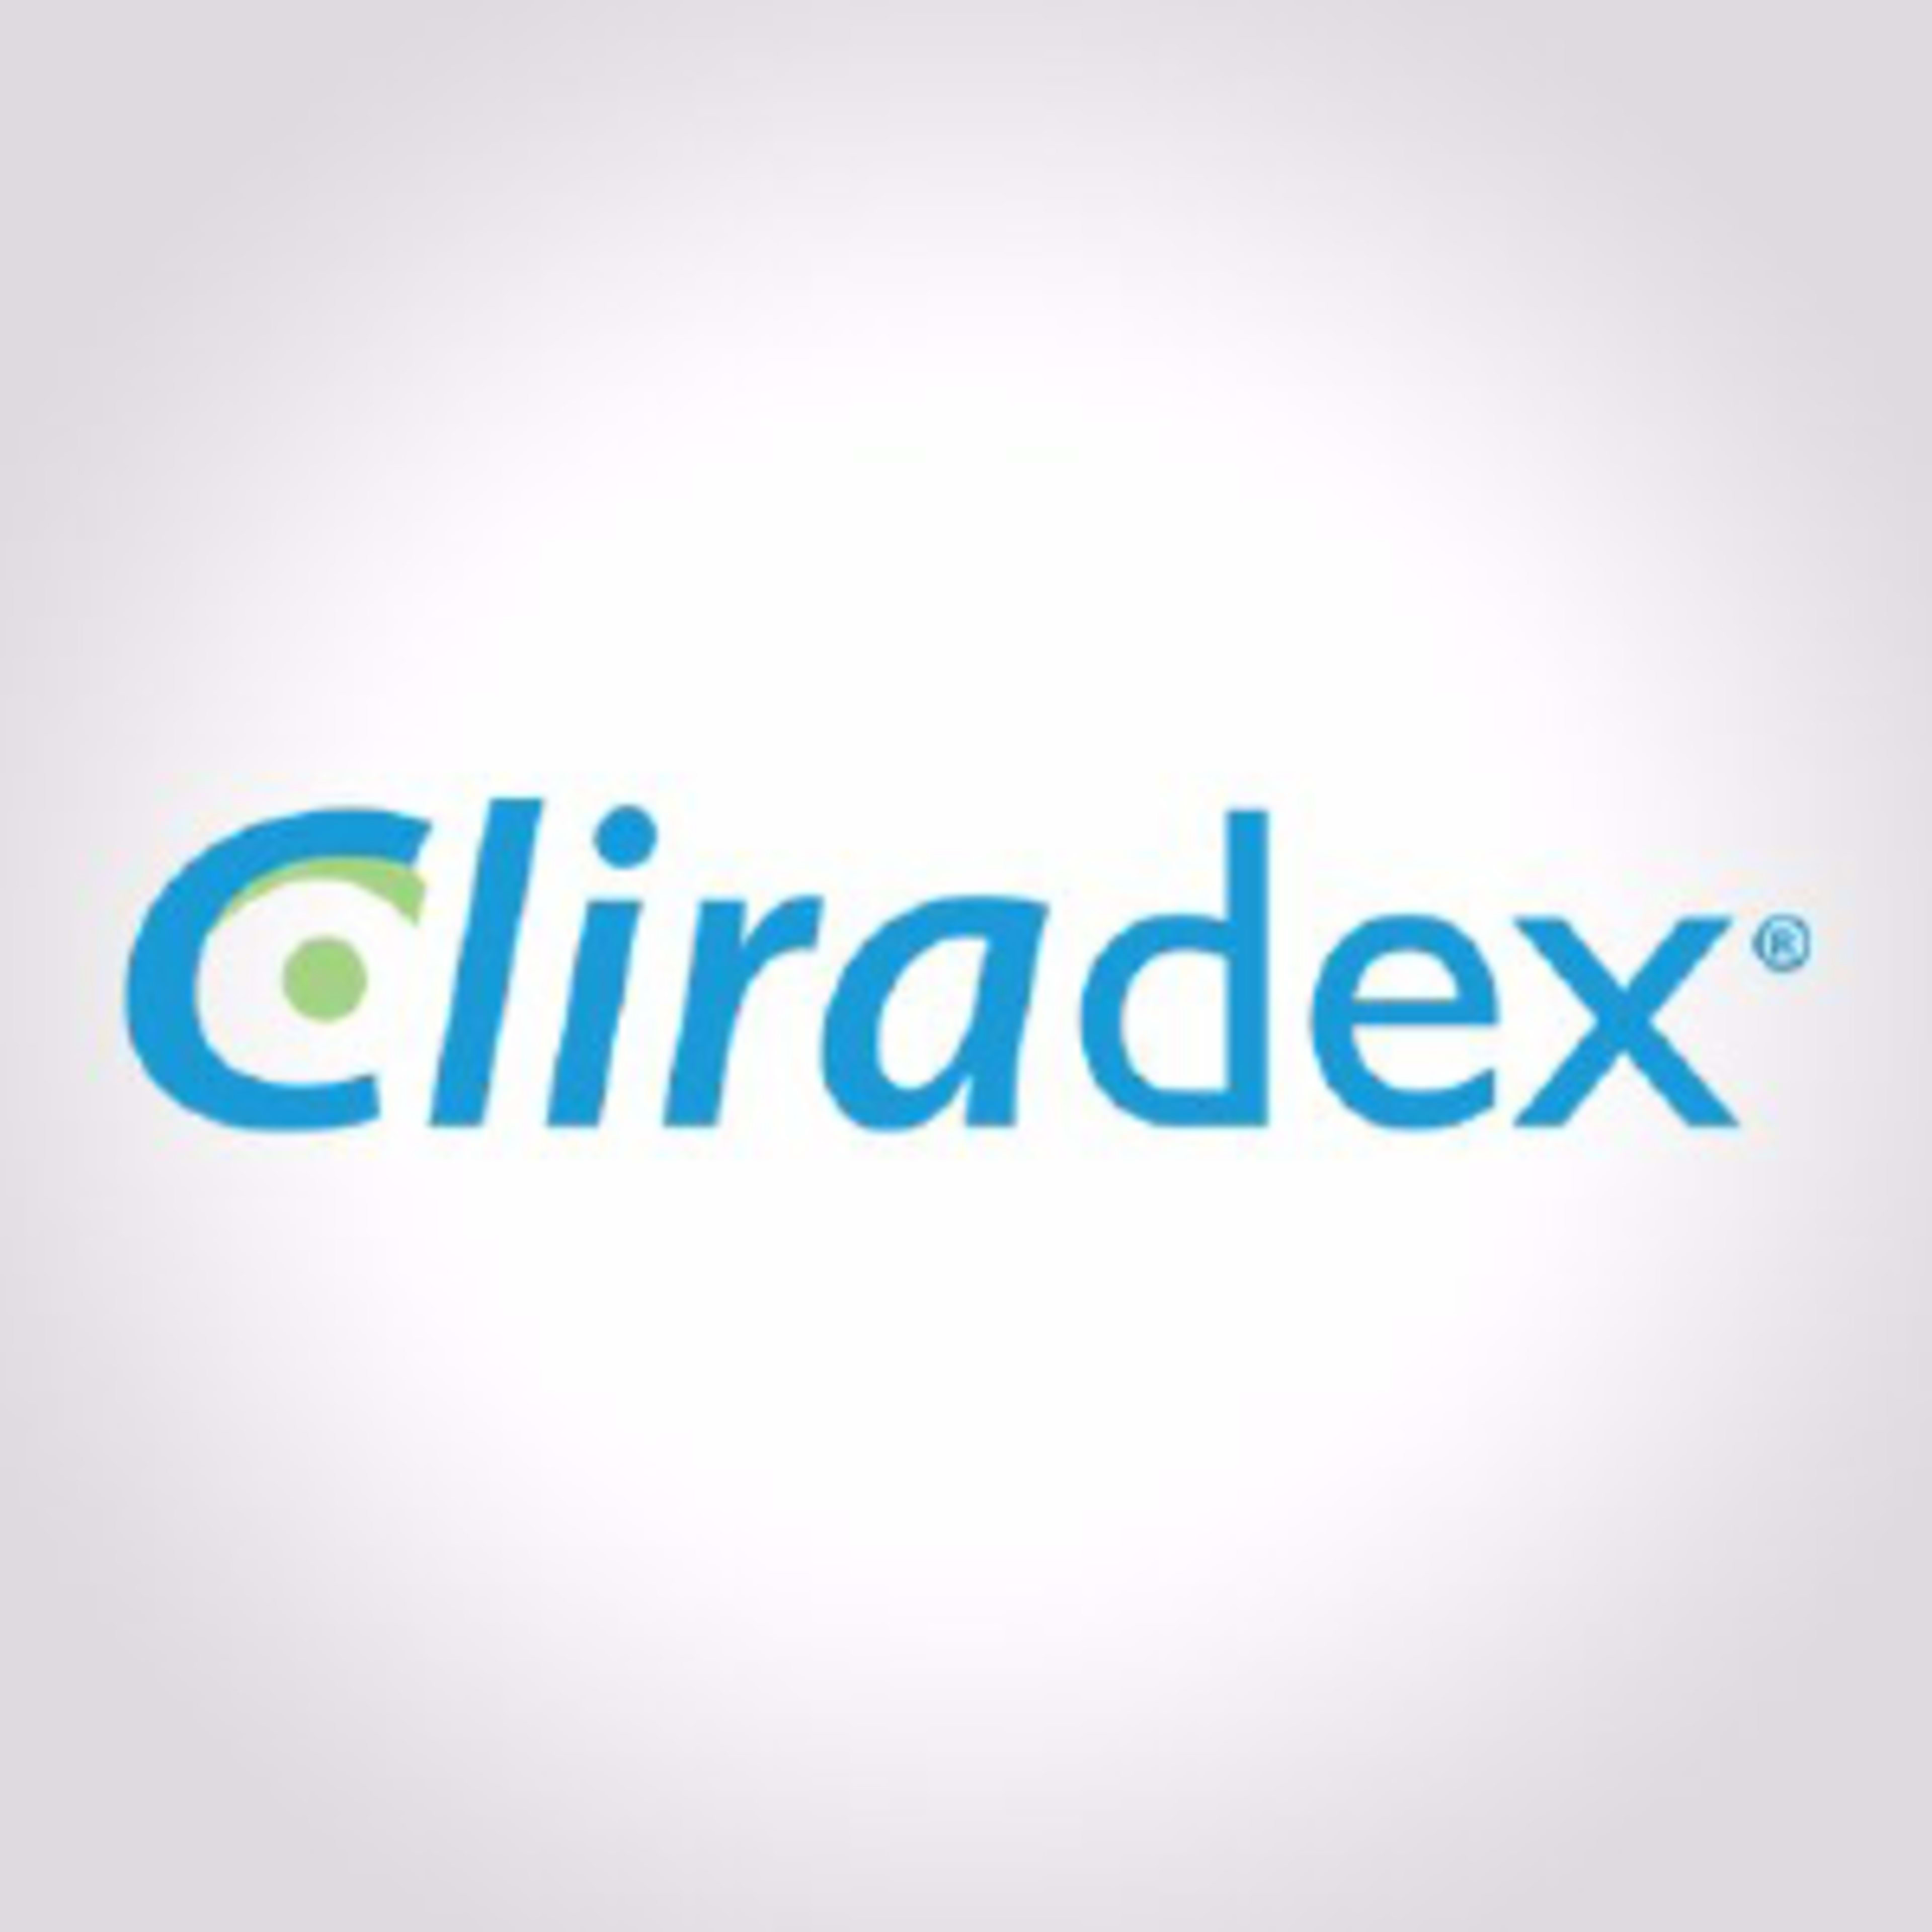 CliradexCode